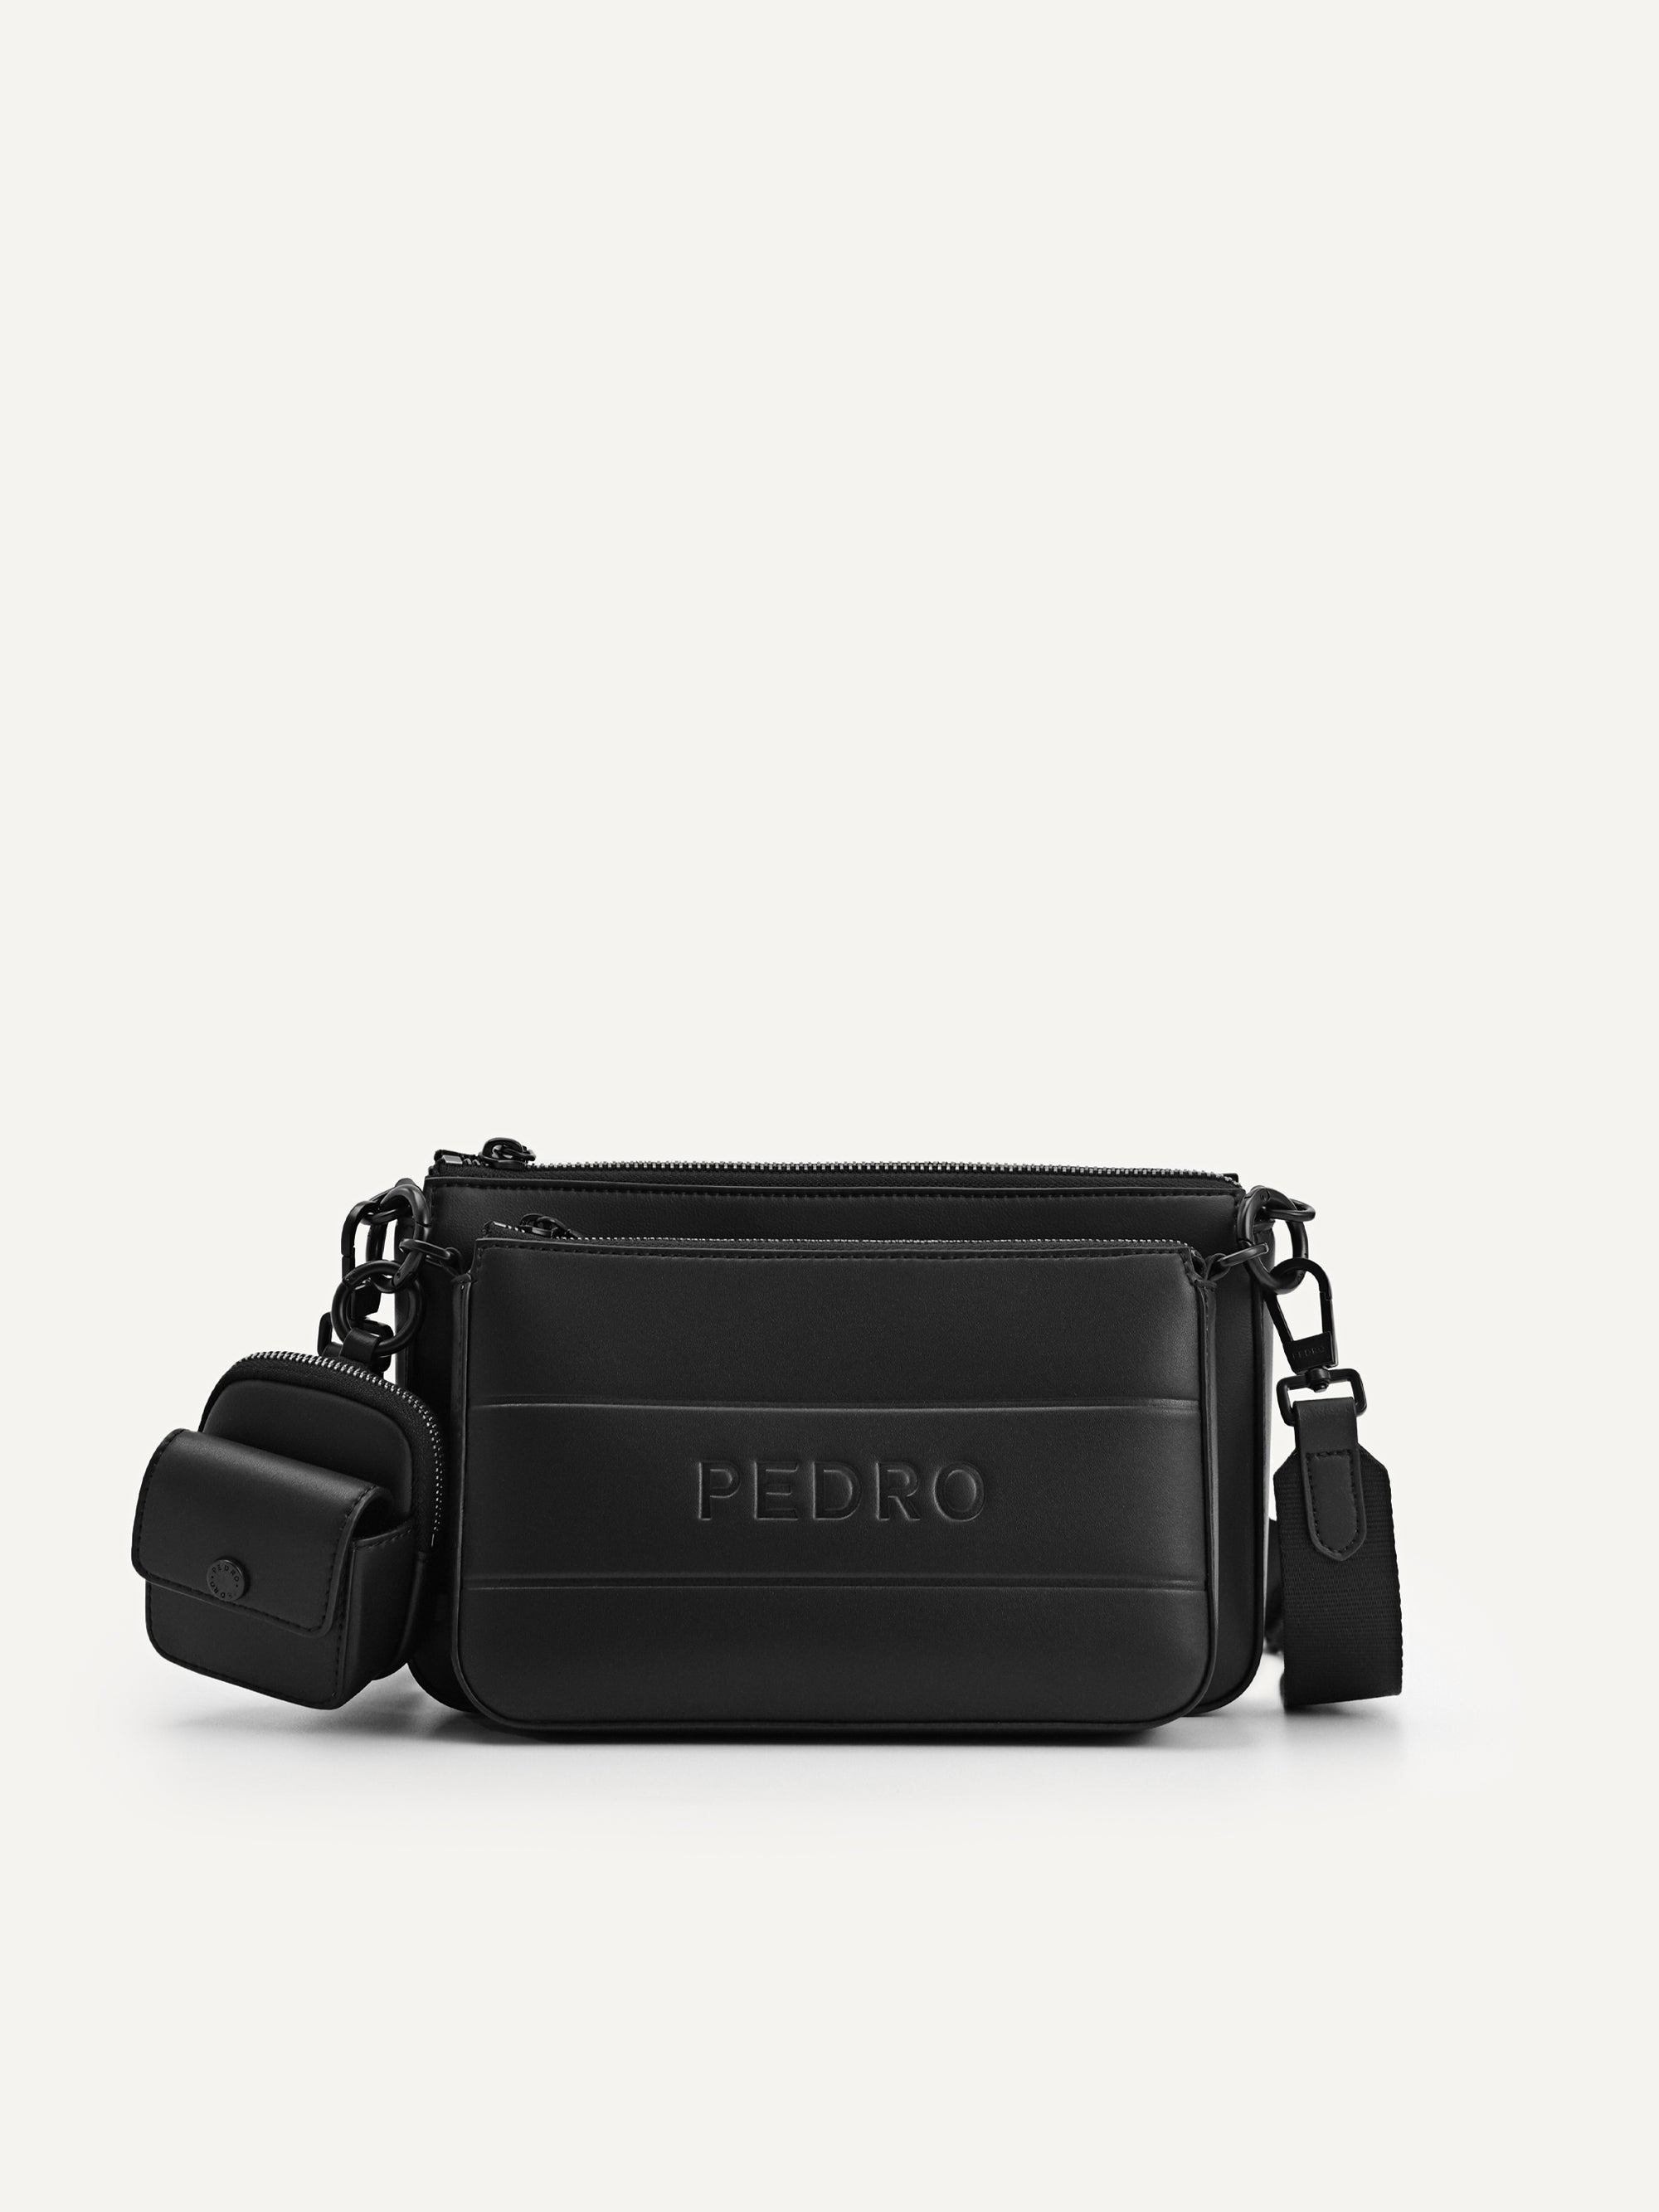 pedro sling bag price